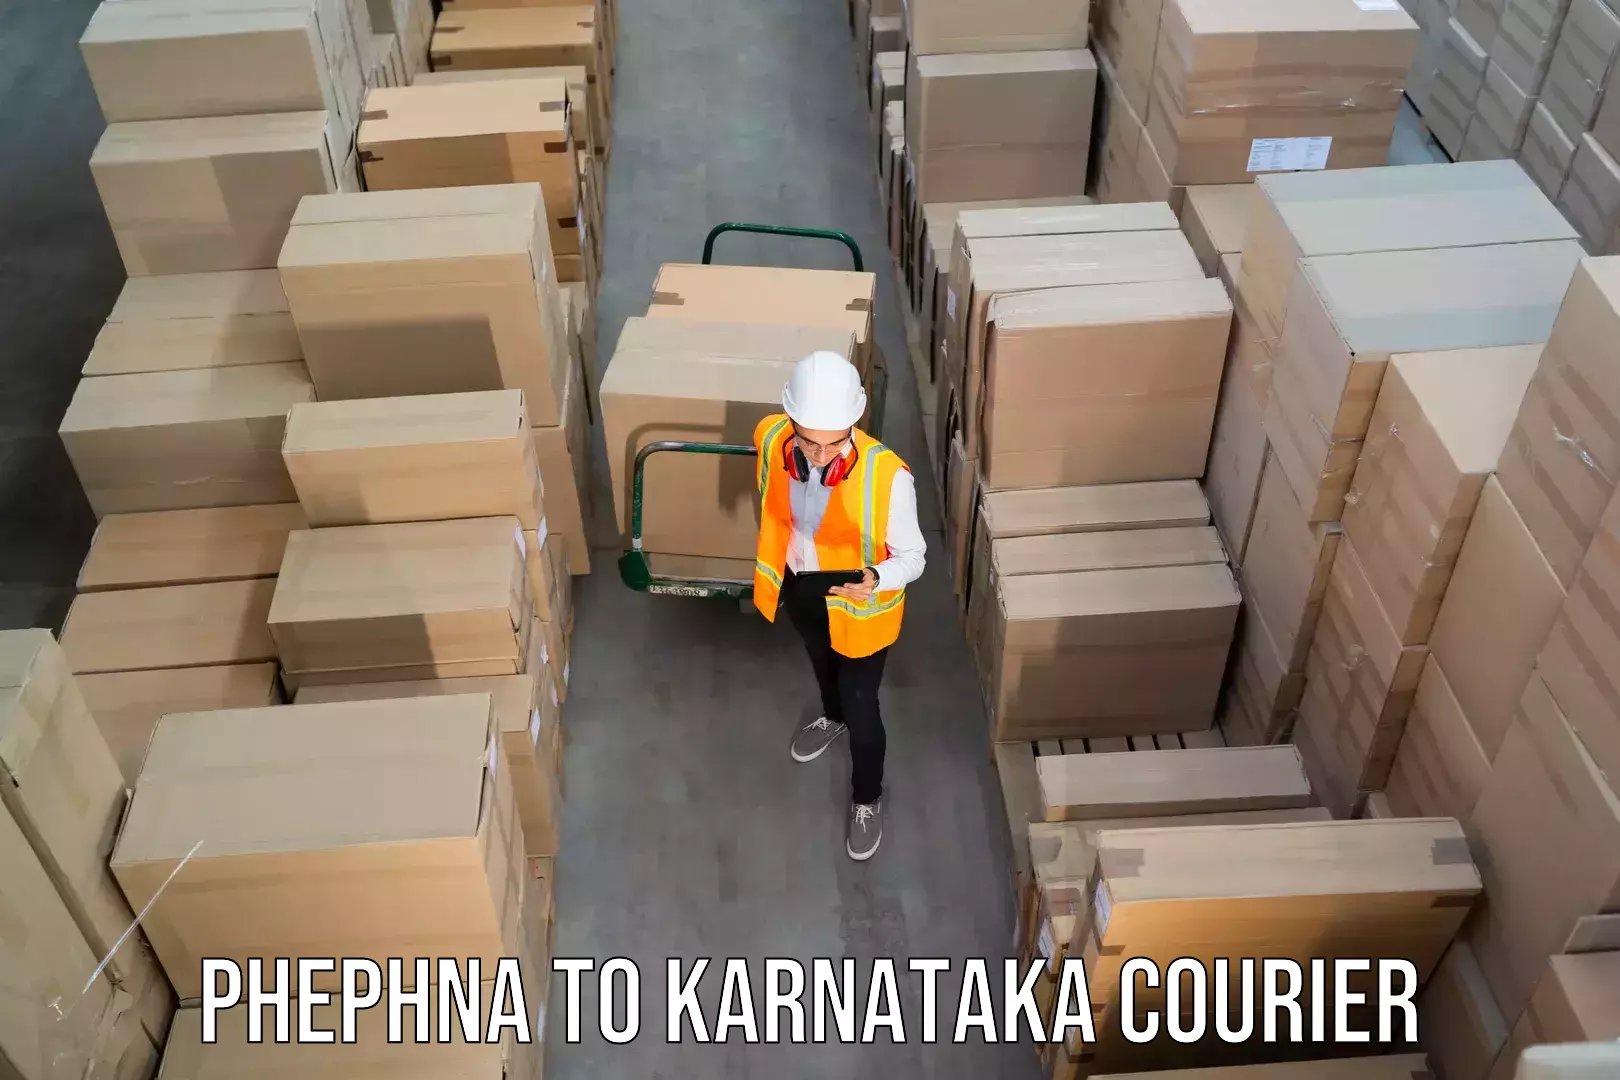 Ground shipping Phephna to Karnataka